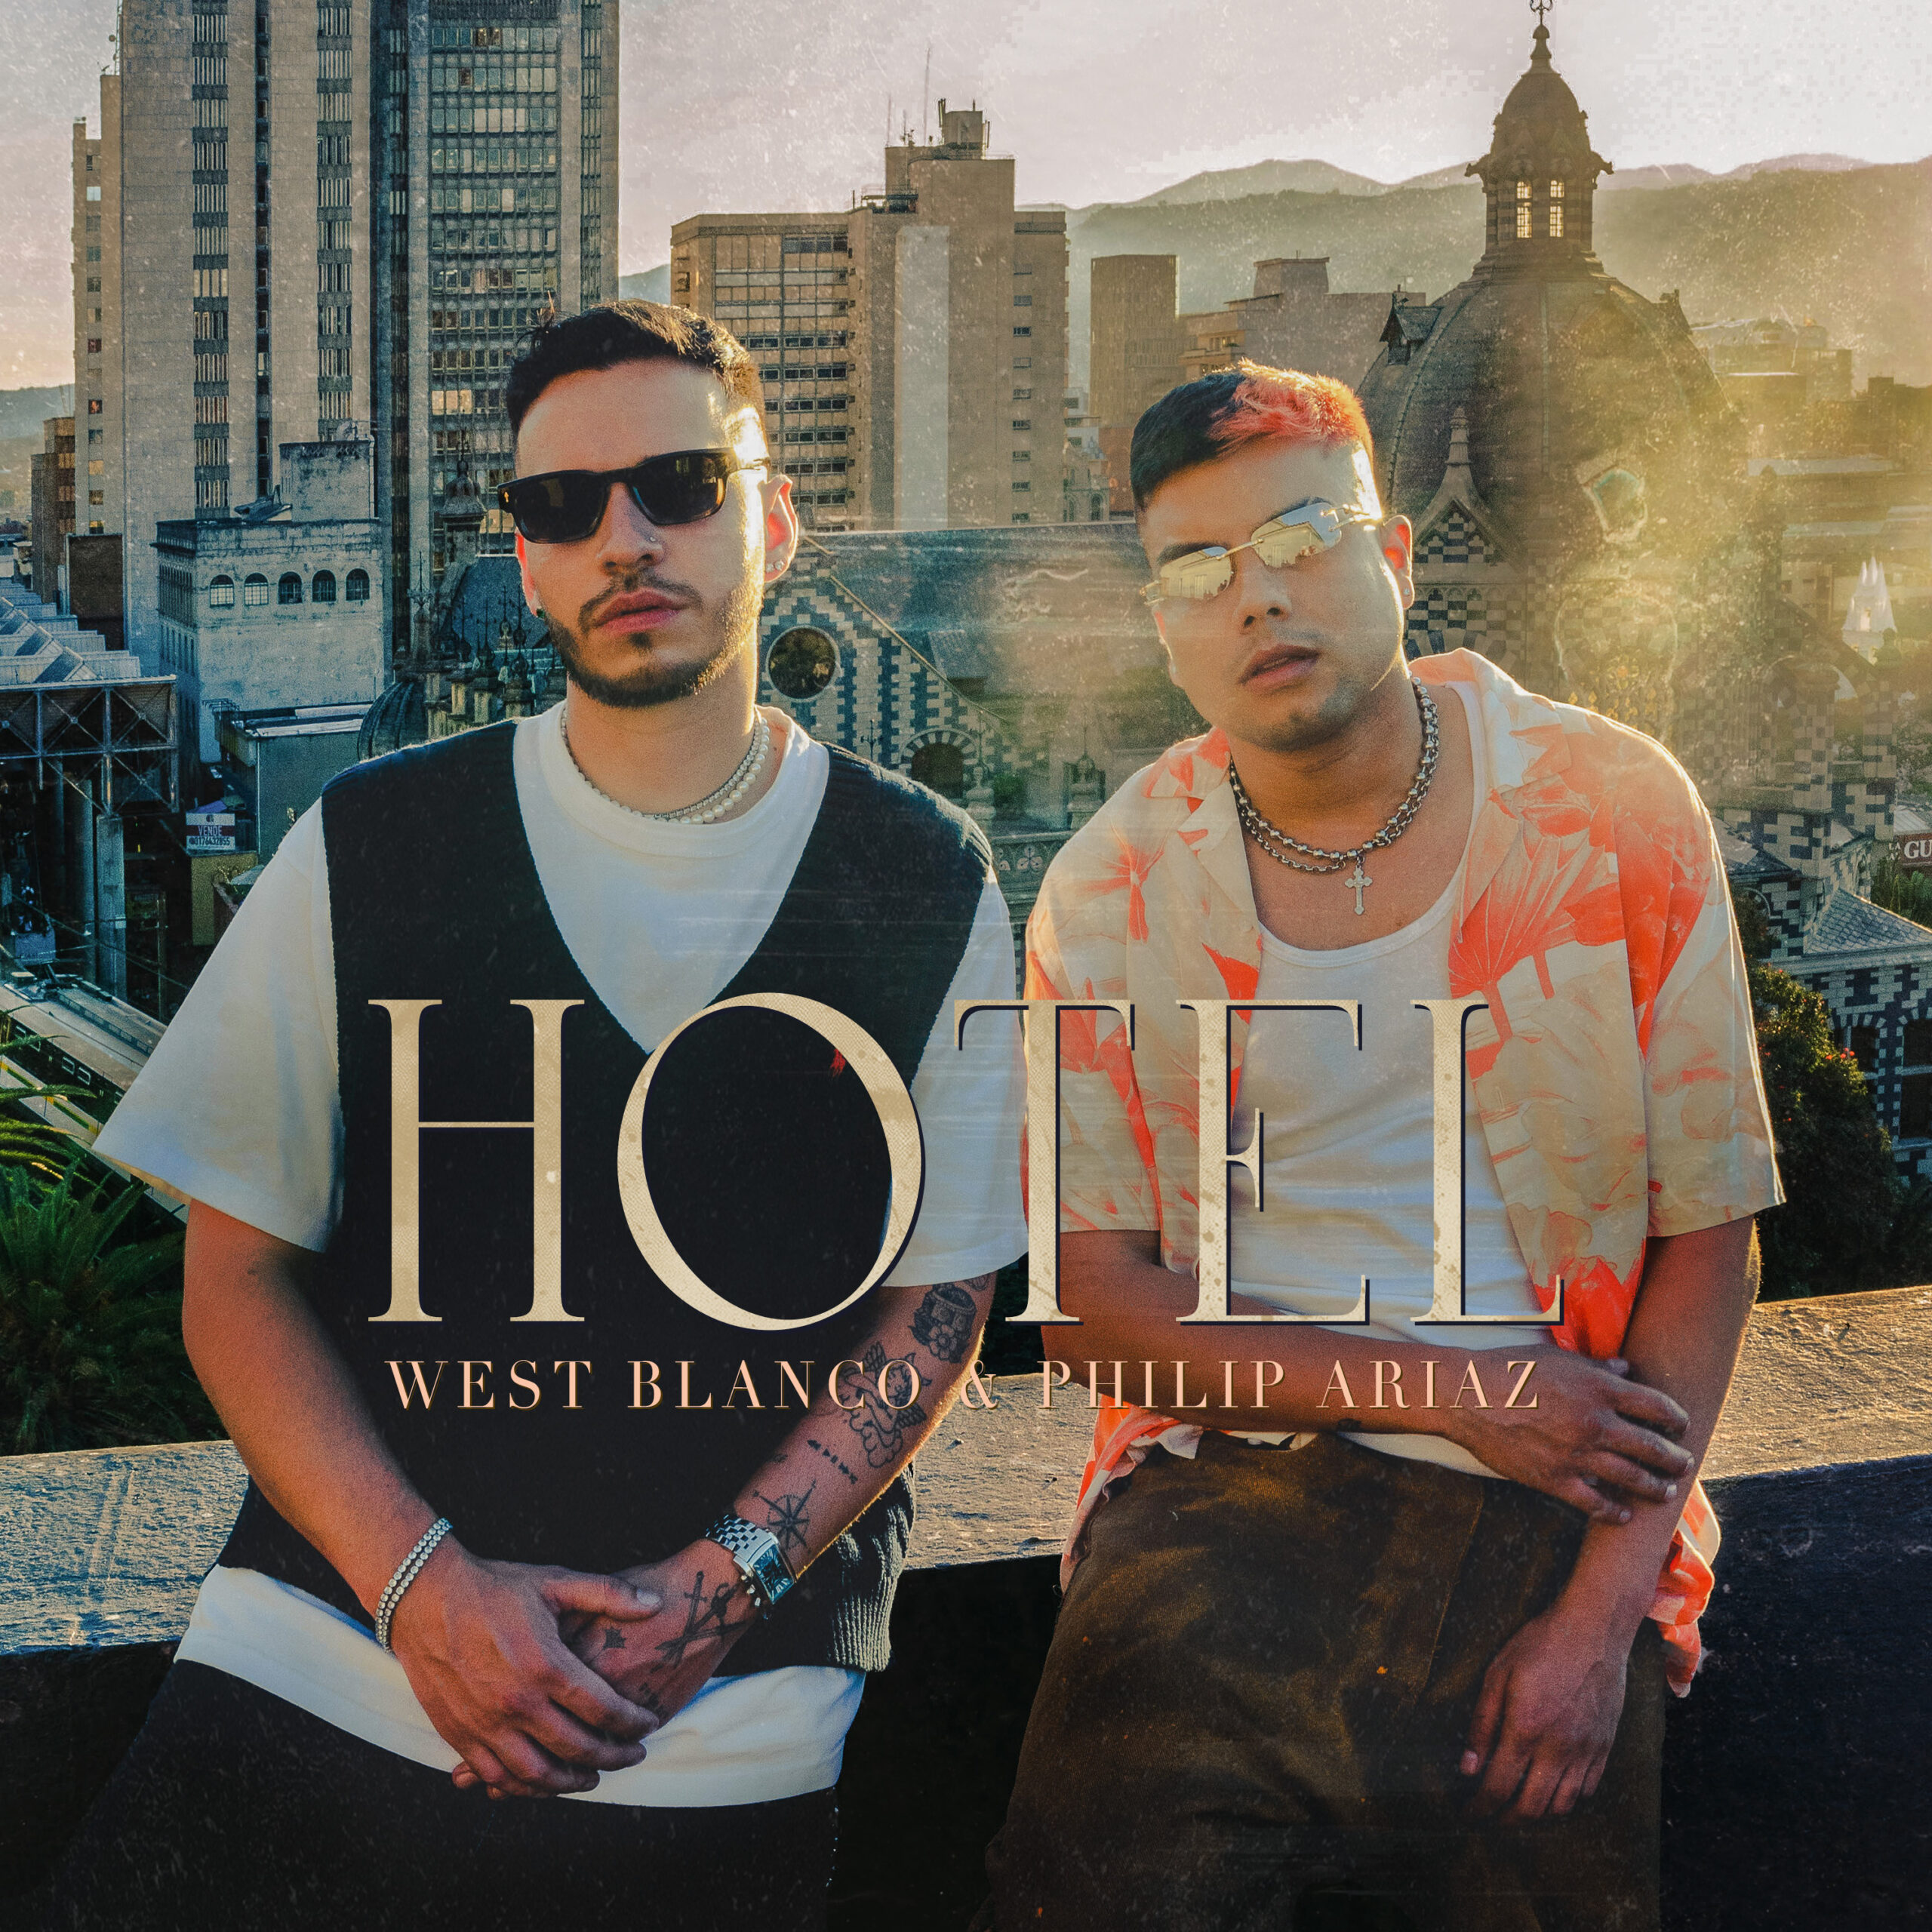 Descubre ‘HOTEL’, la nueva canción de West Blanco junto a Philip Ariaz